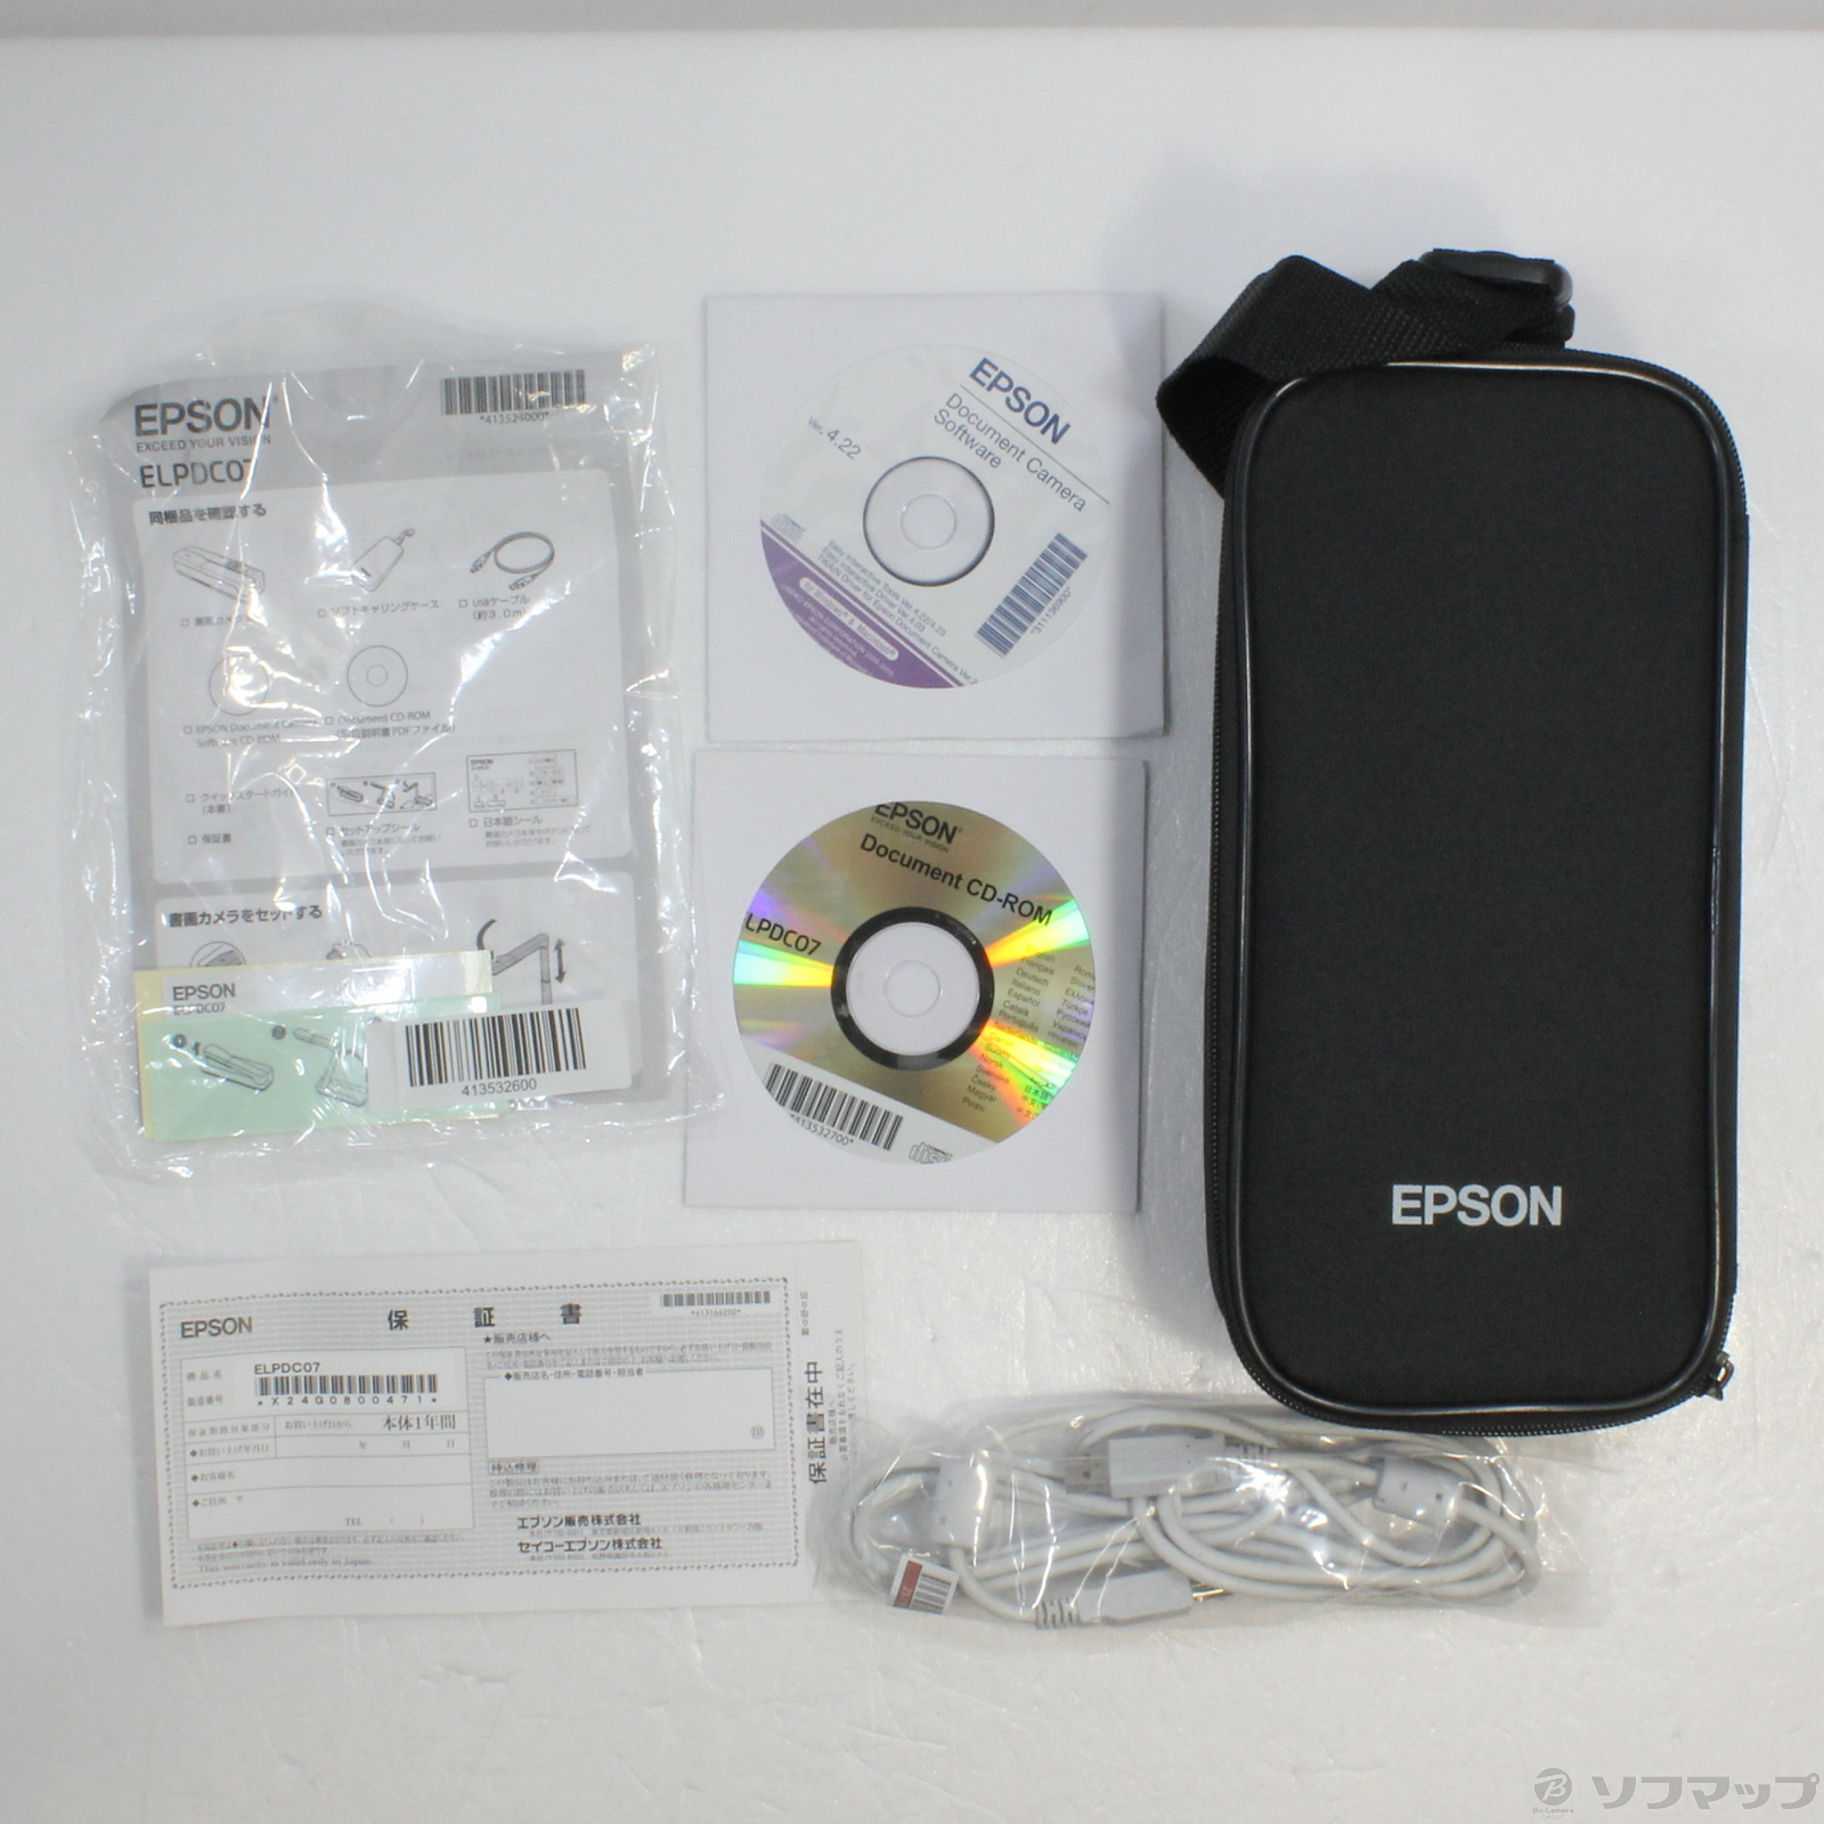 エプロン 書画カメラ ELPDC07 - PC周辺機器